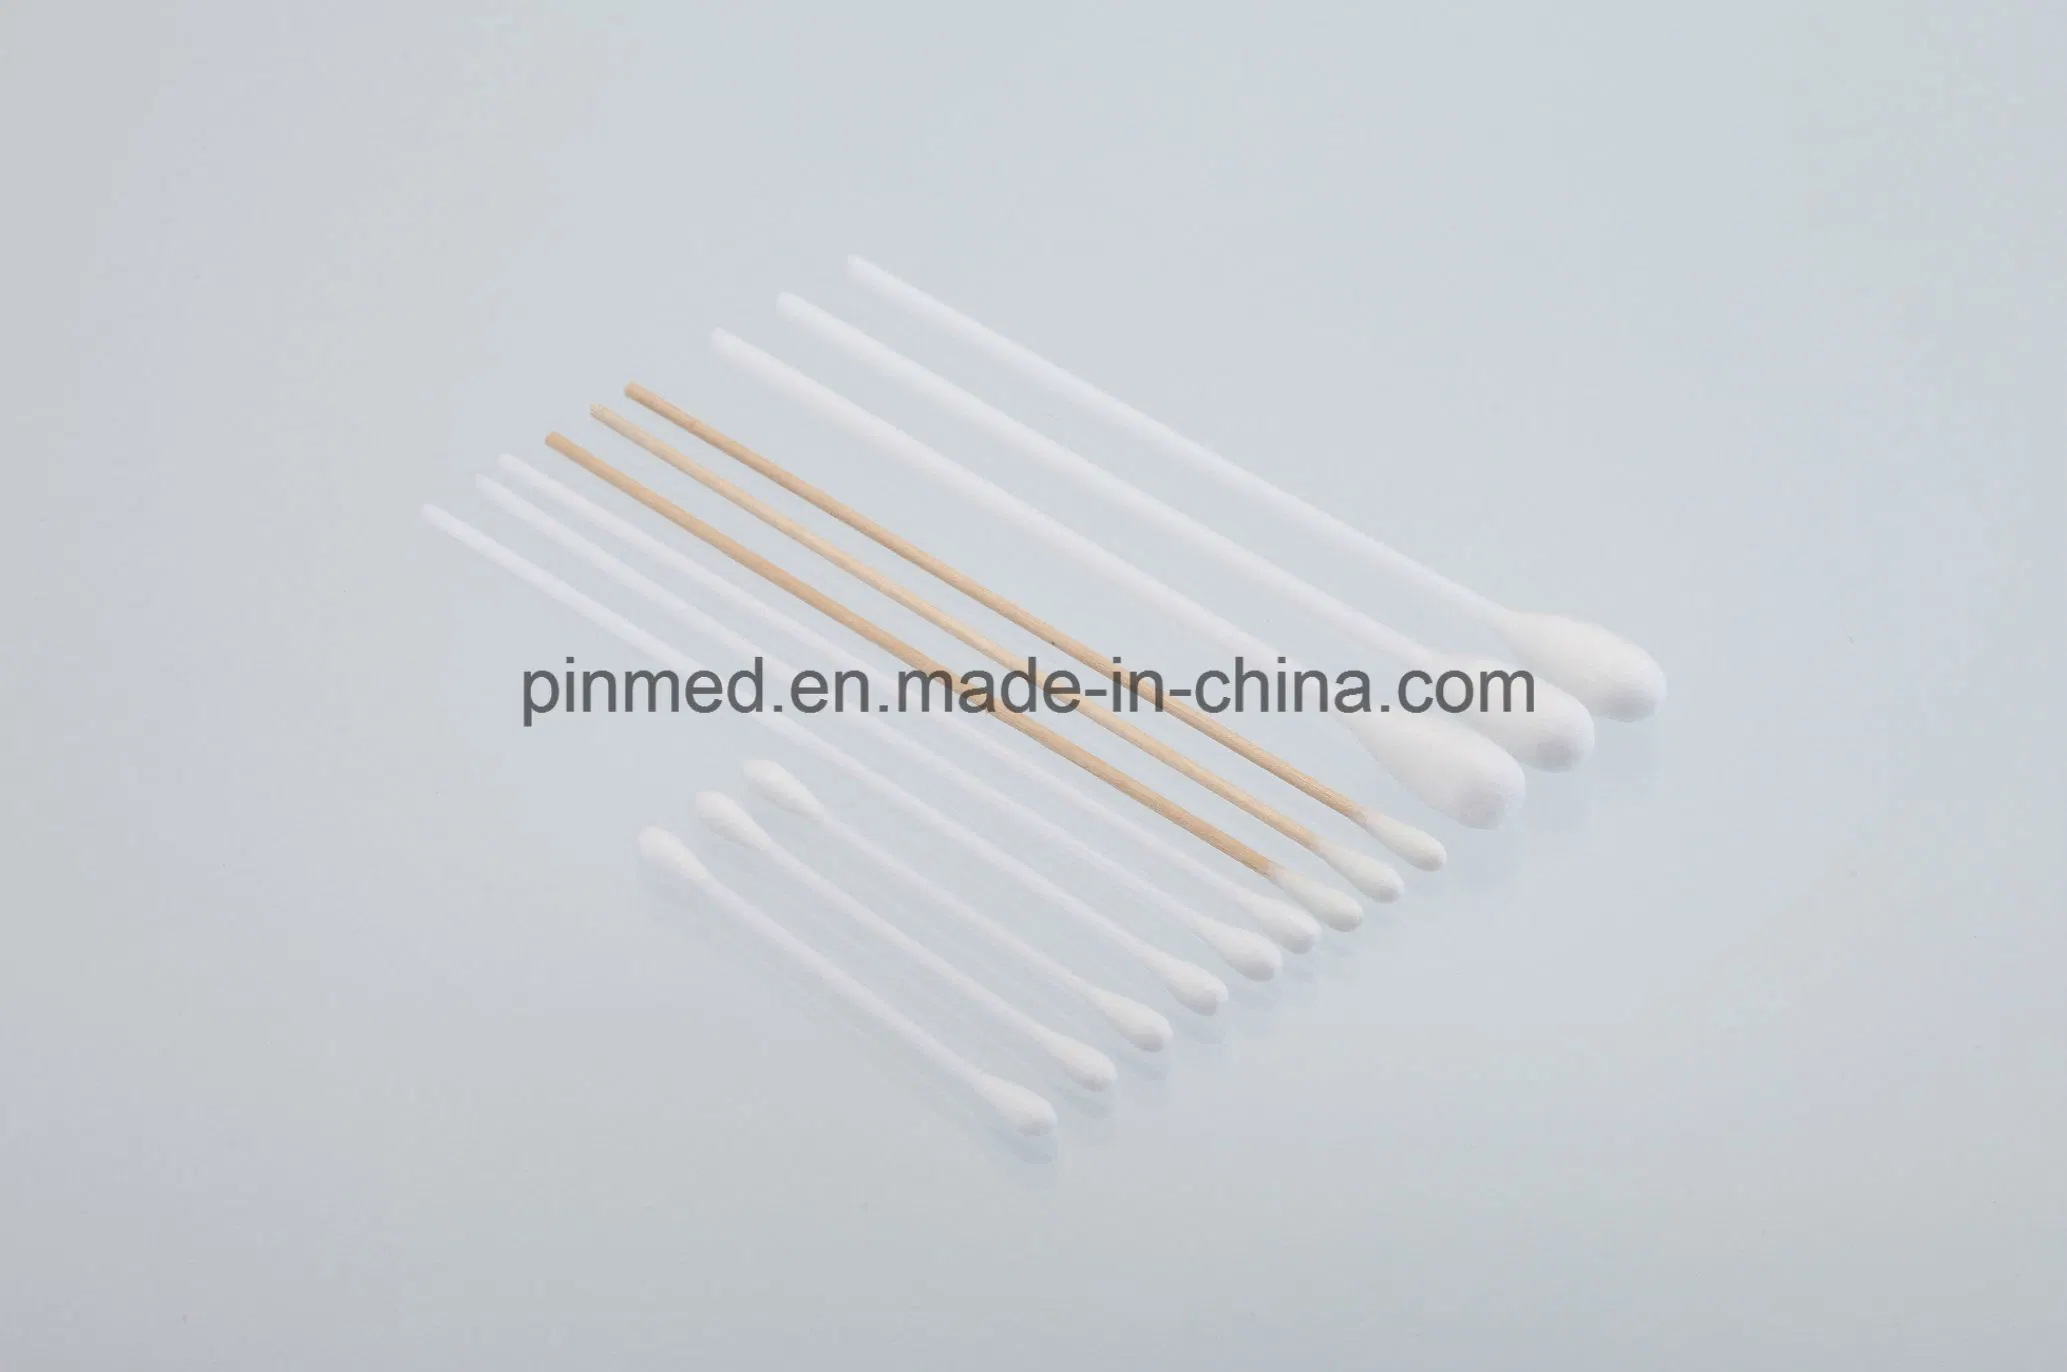 Disposable Cotton Tip Applicators, Plastic Stick